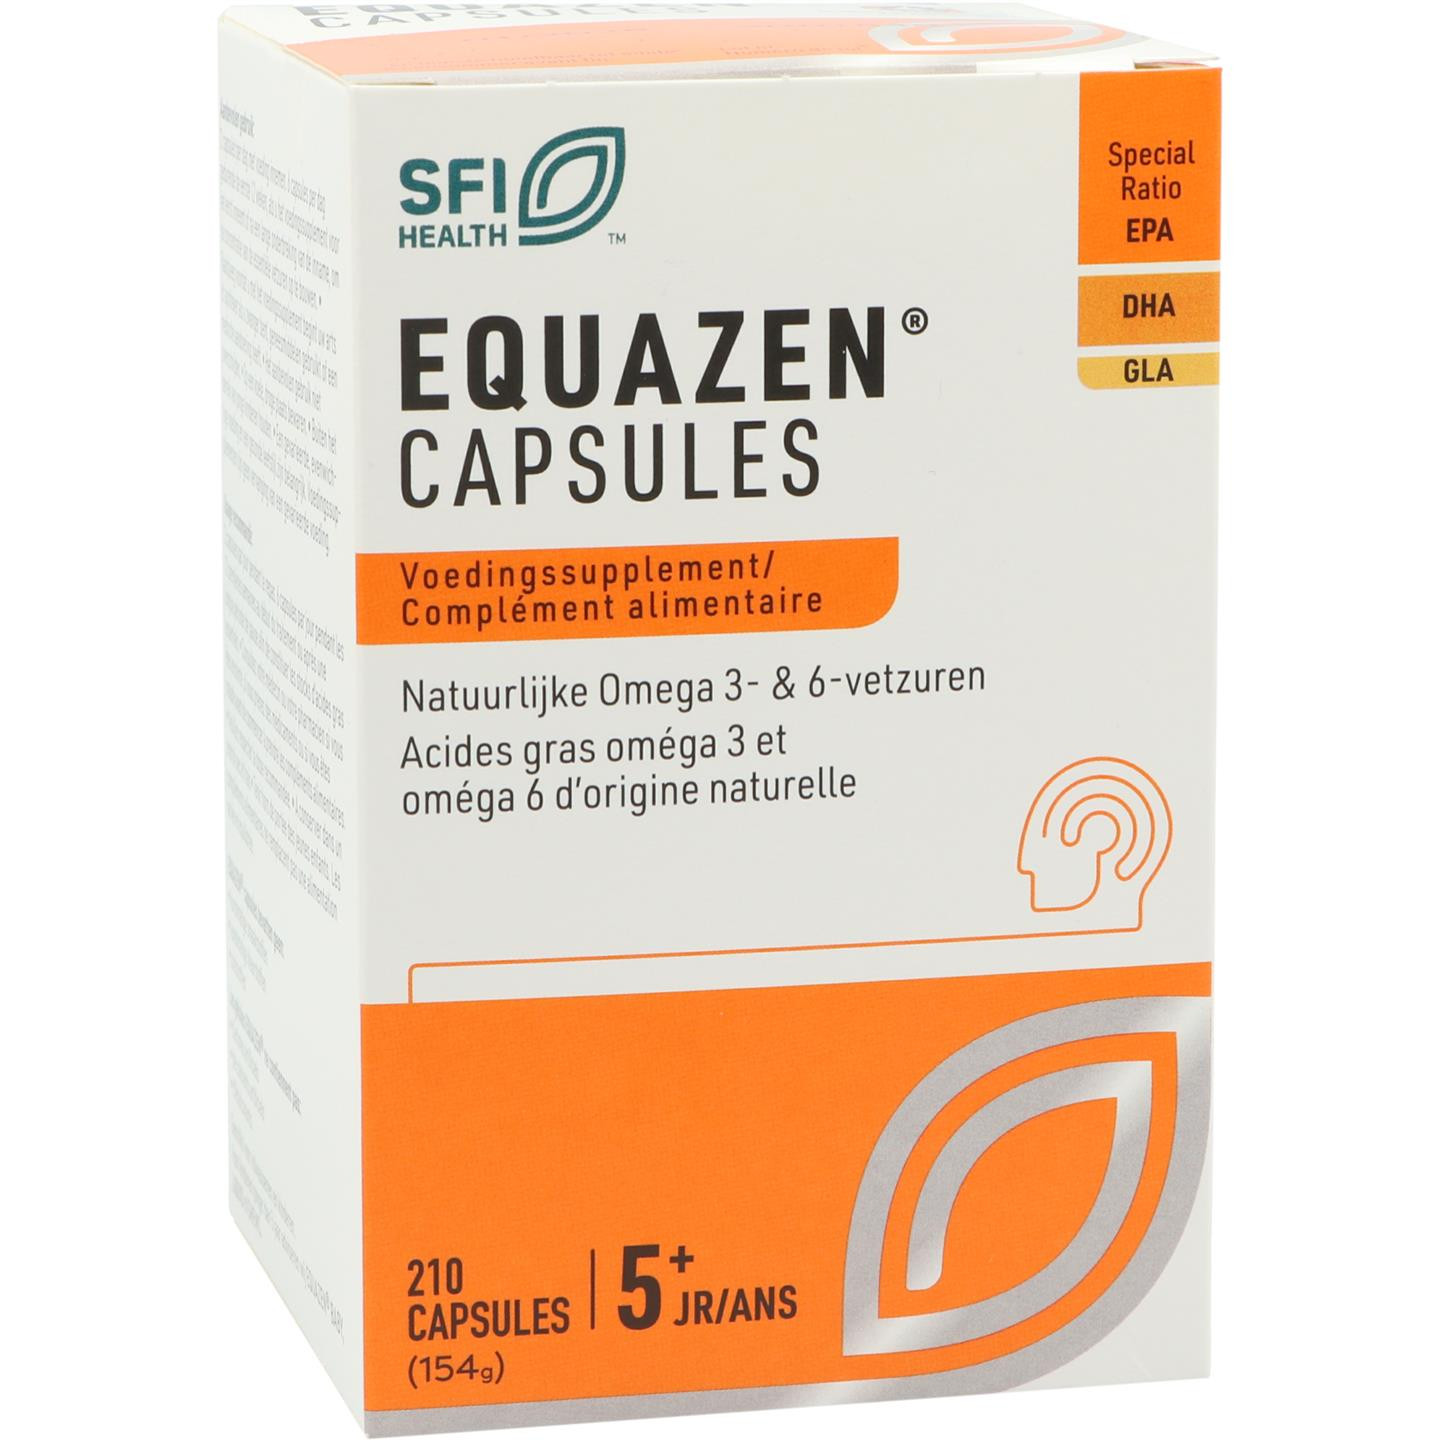 Equazen capsules